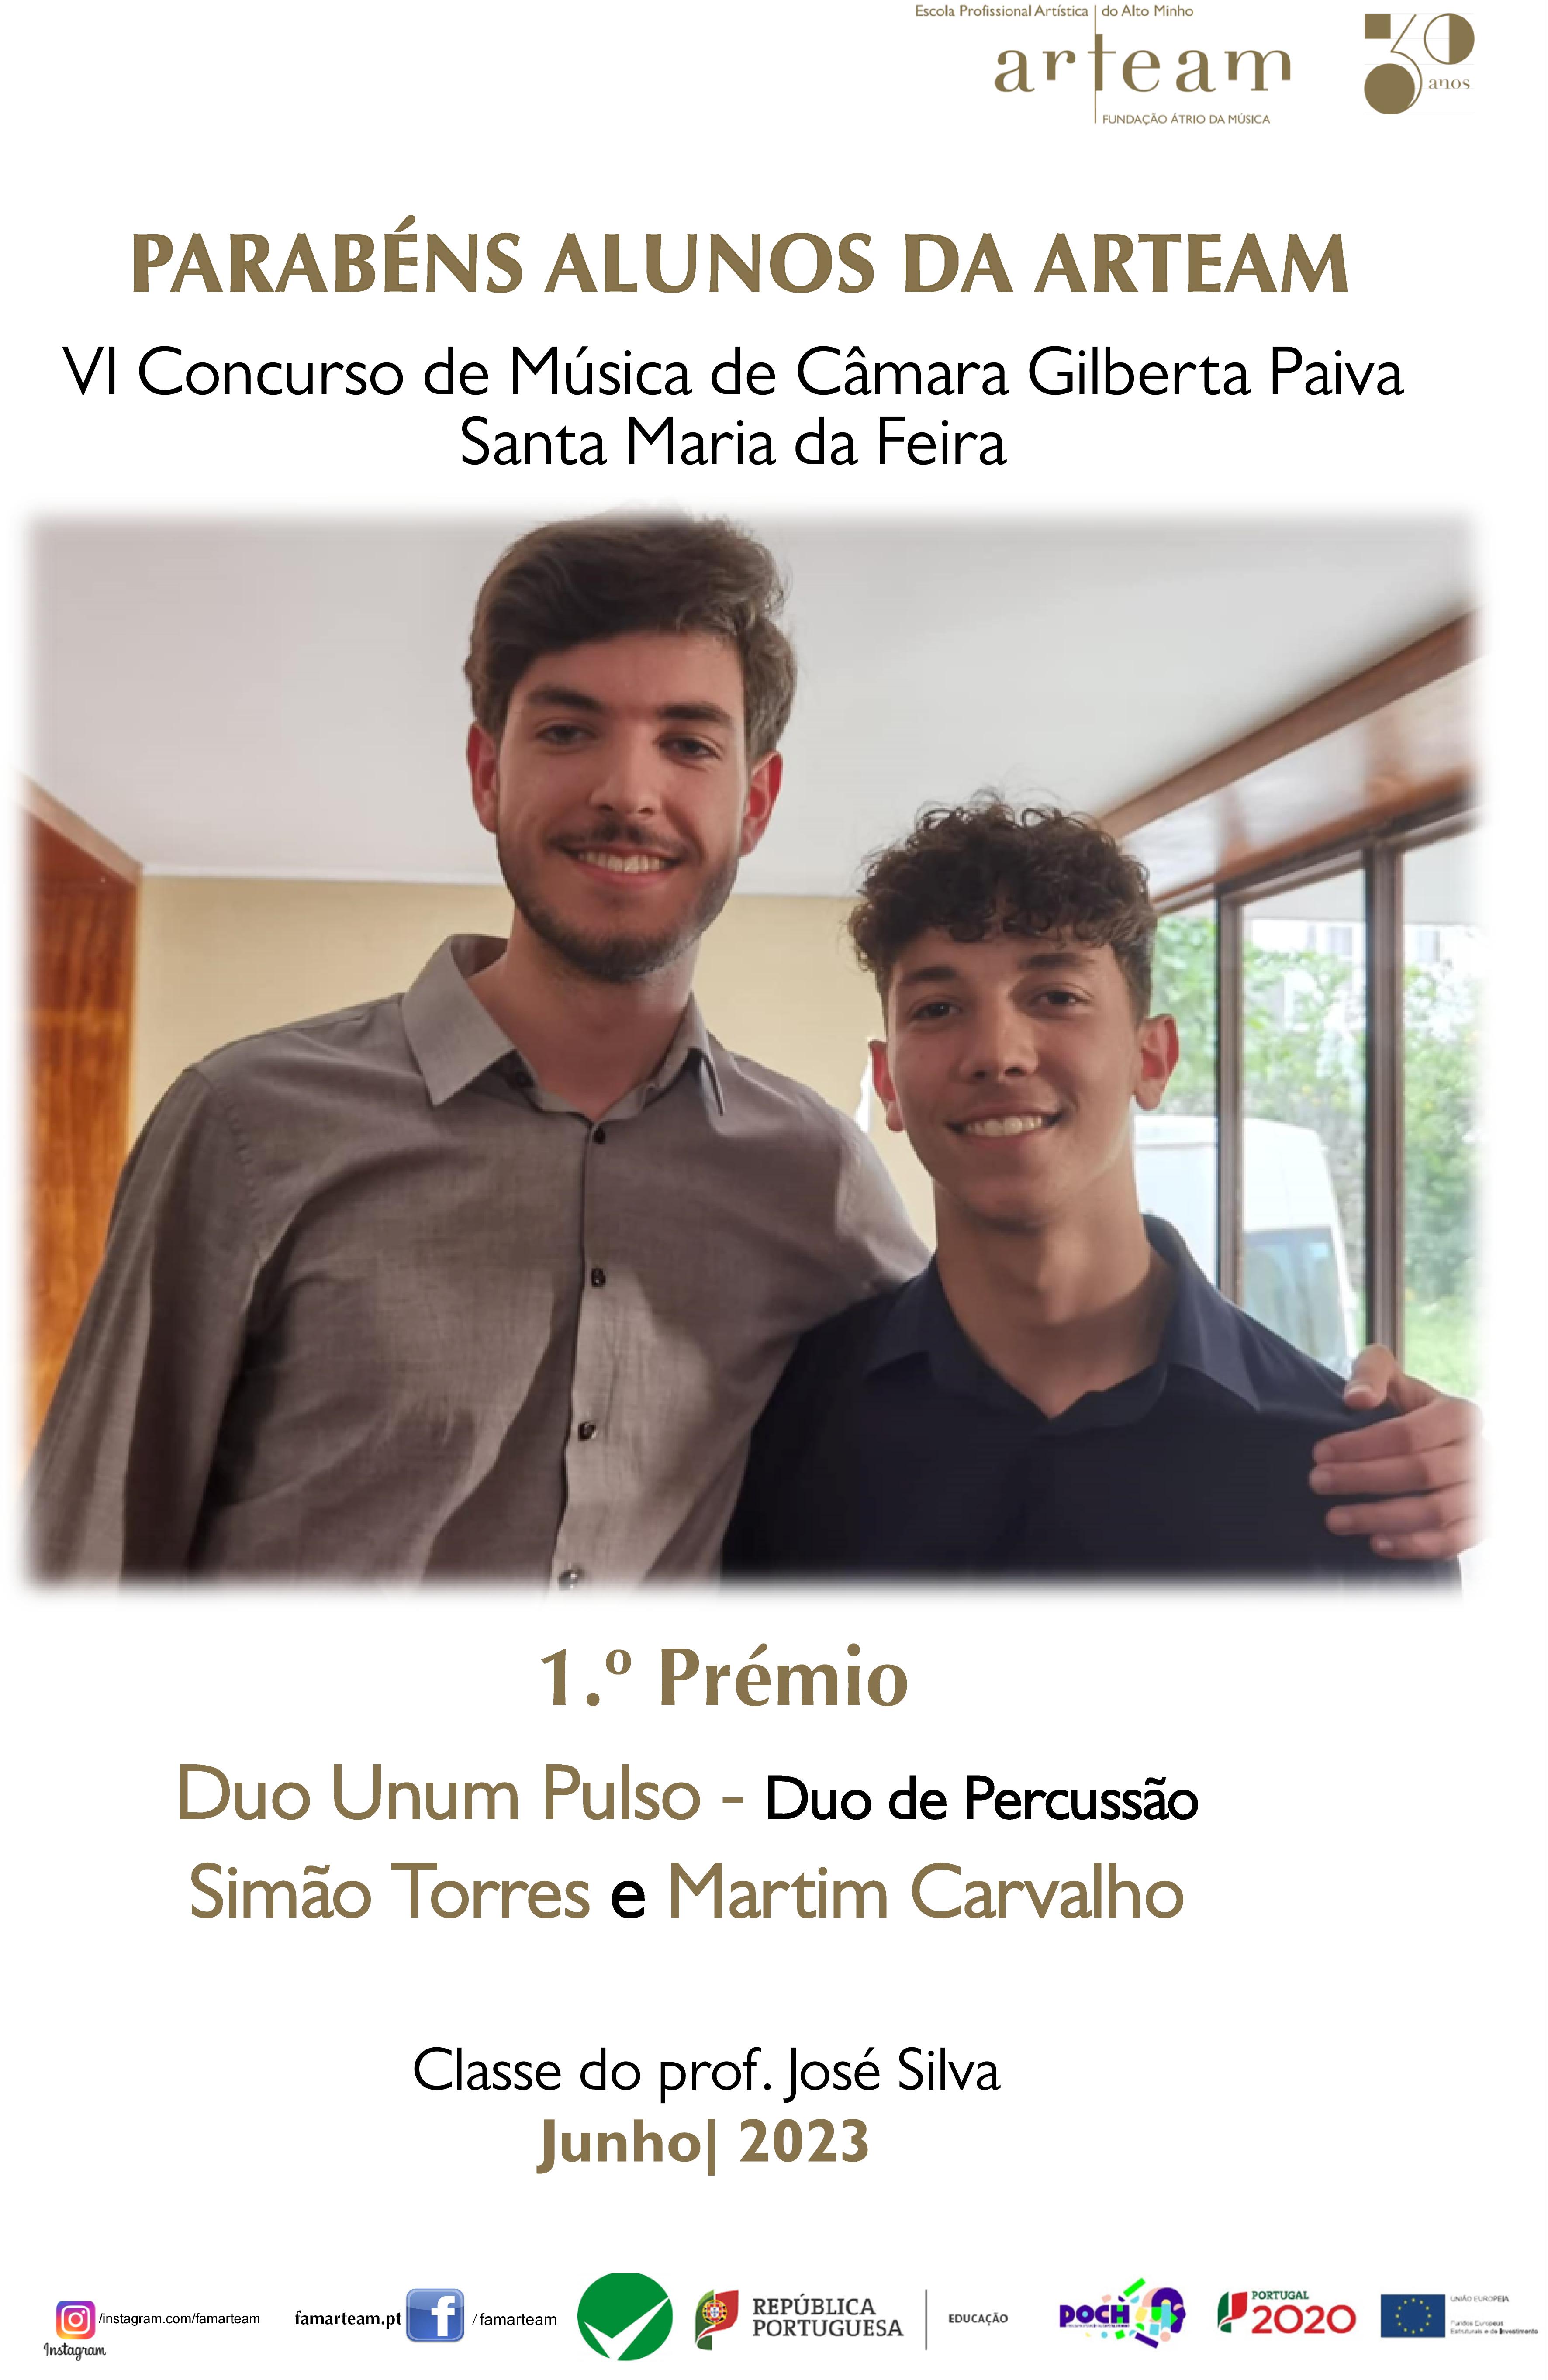 Muitos parabéns ao Duo Unum Pulso – Duo de percussão ARTEAM